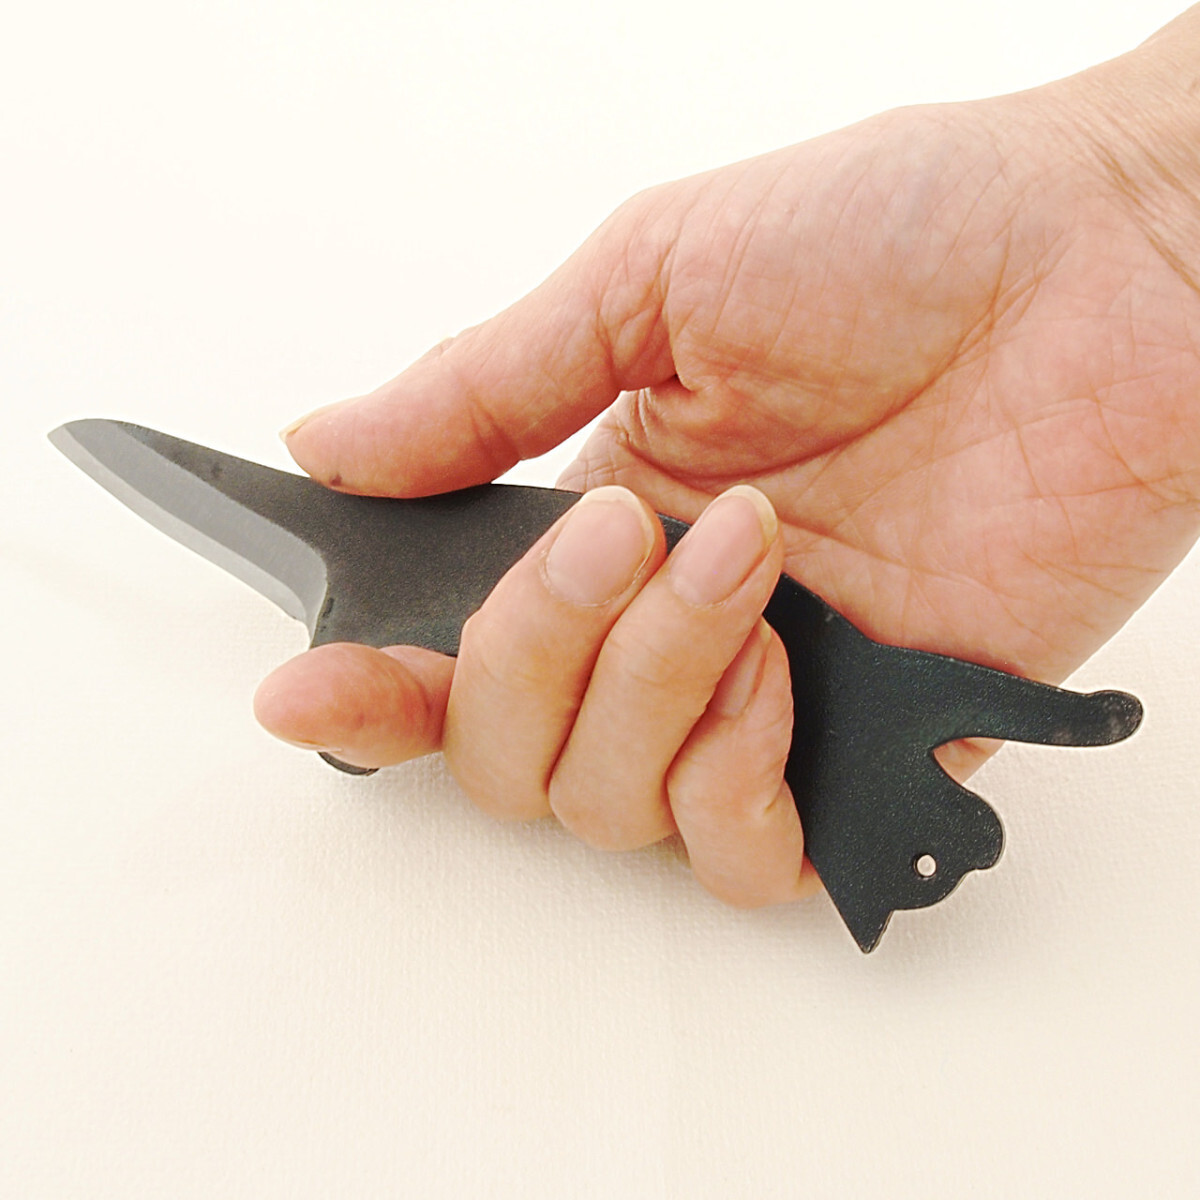 [ с футляром ].... Mini нож точилка нож для бумаги письмо устройство открывания деревообработка кемпинг сделано в Японии земля . удар режущий инструмент 